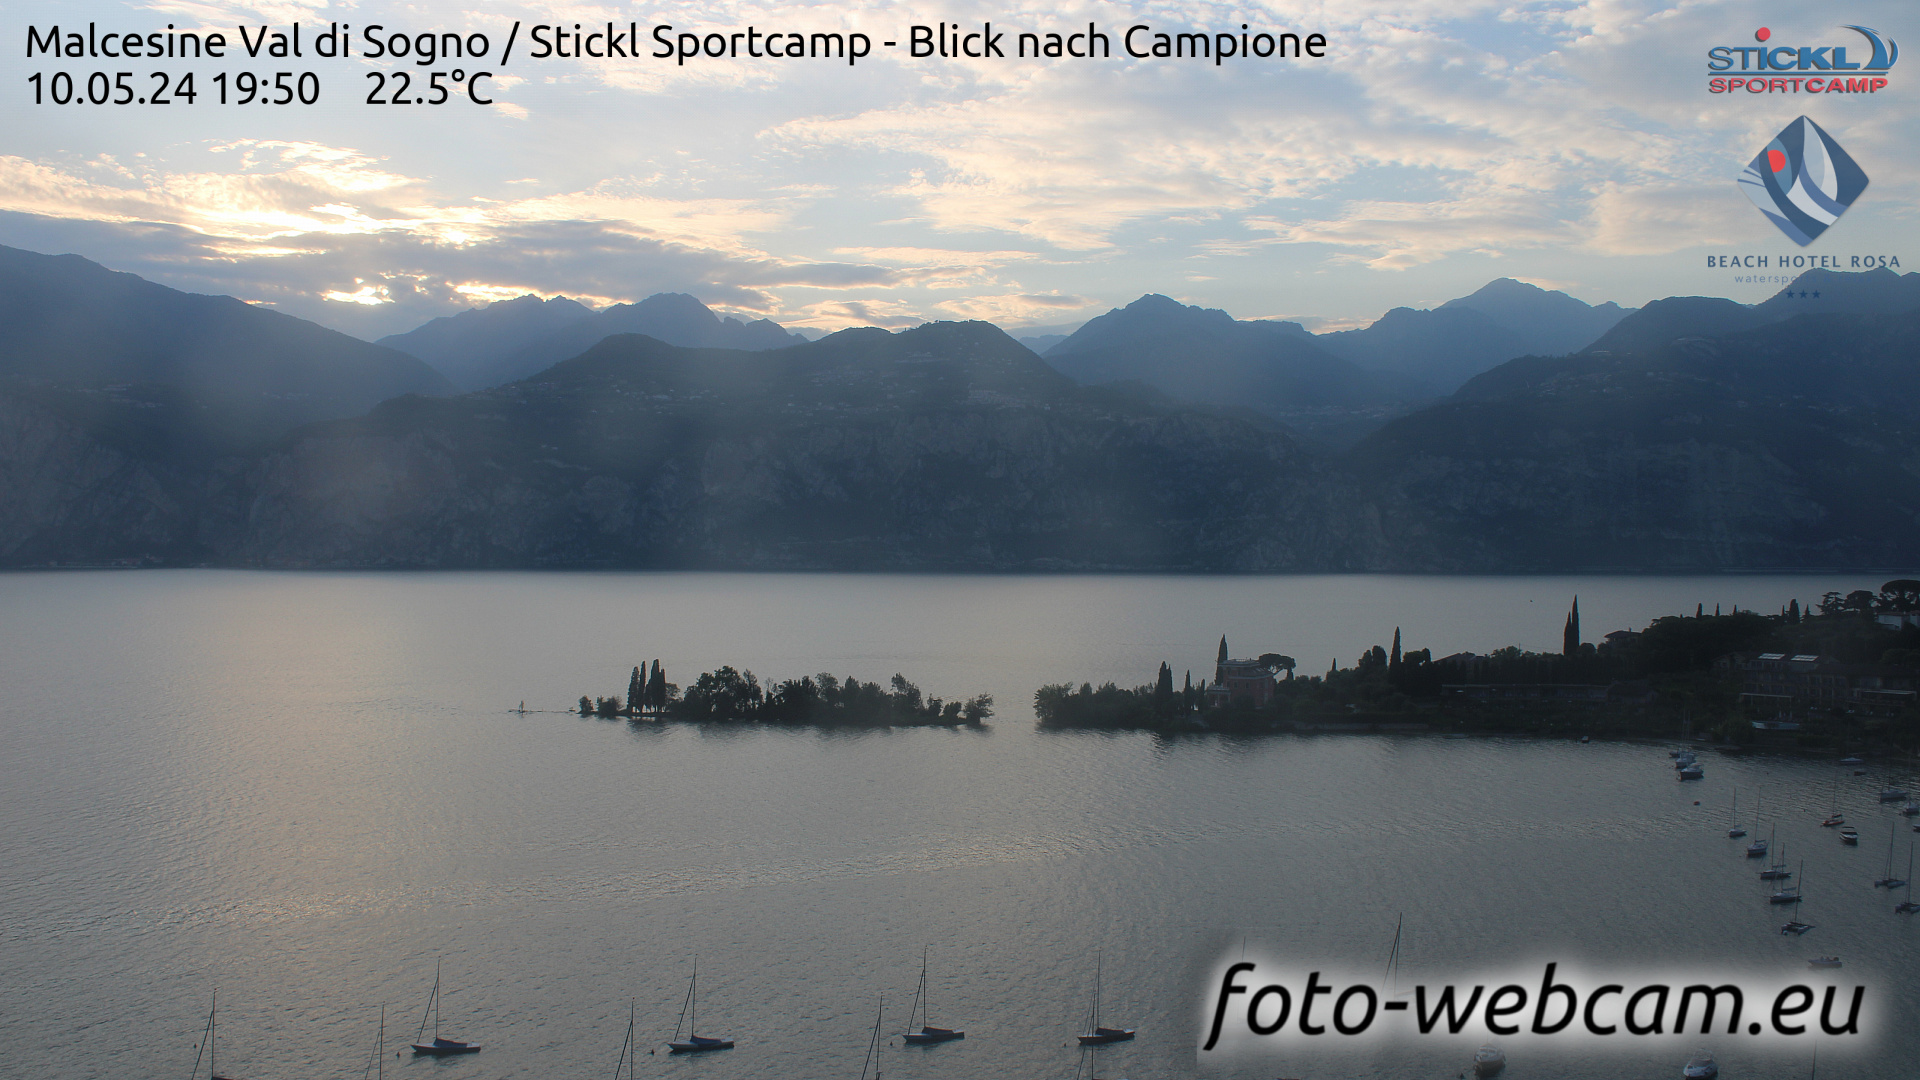 Malcesine (Lake Garda) Mon. 19:54